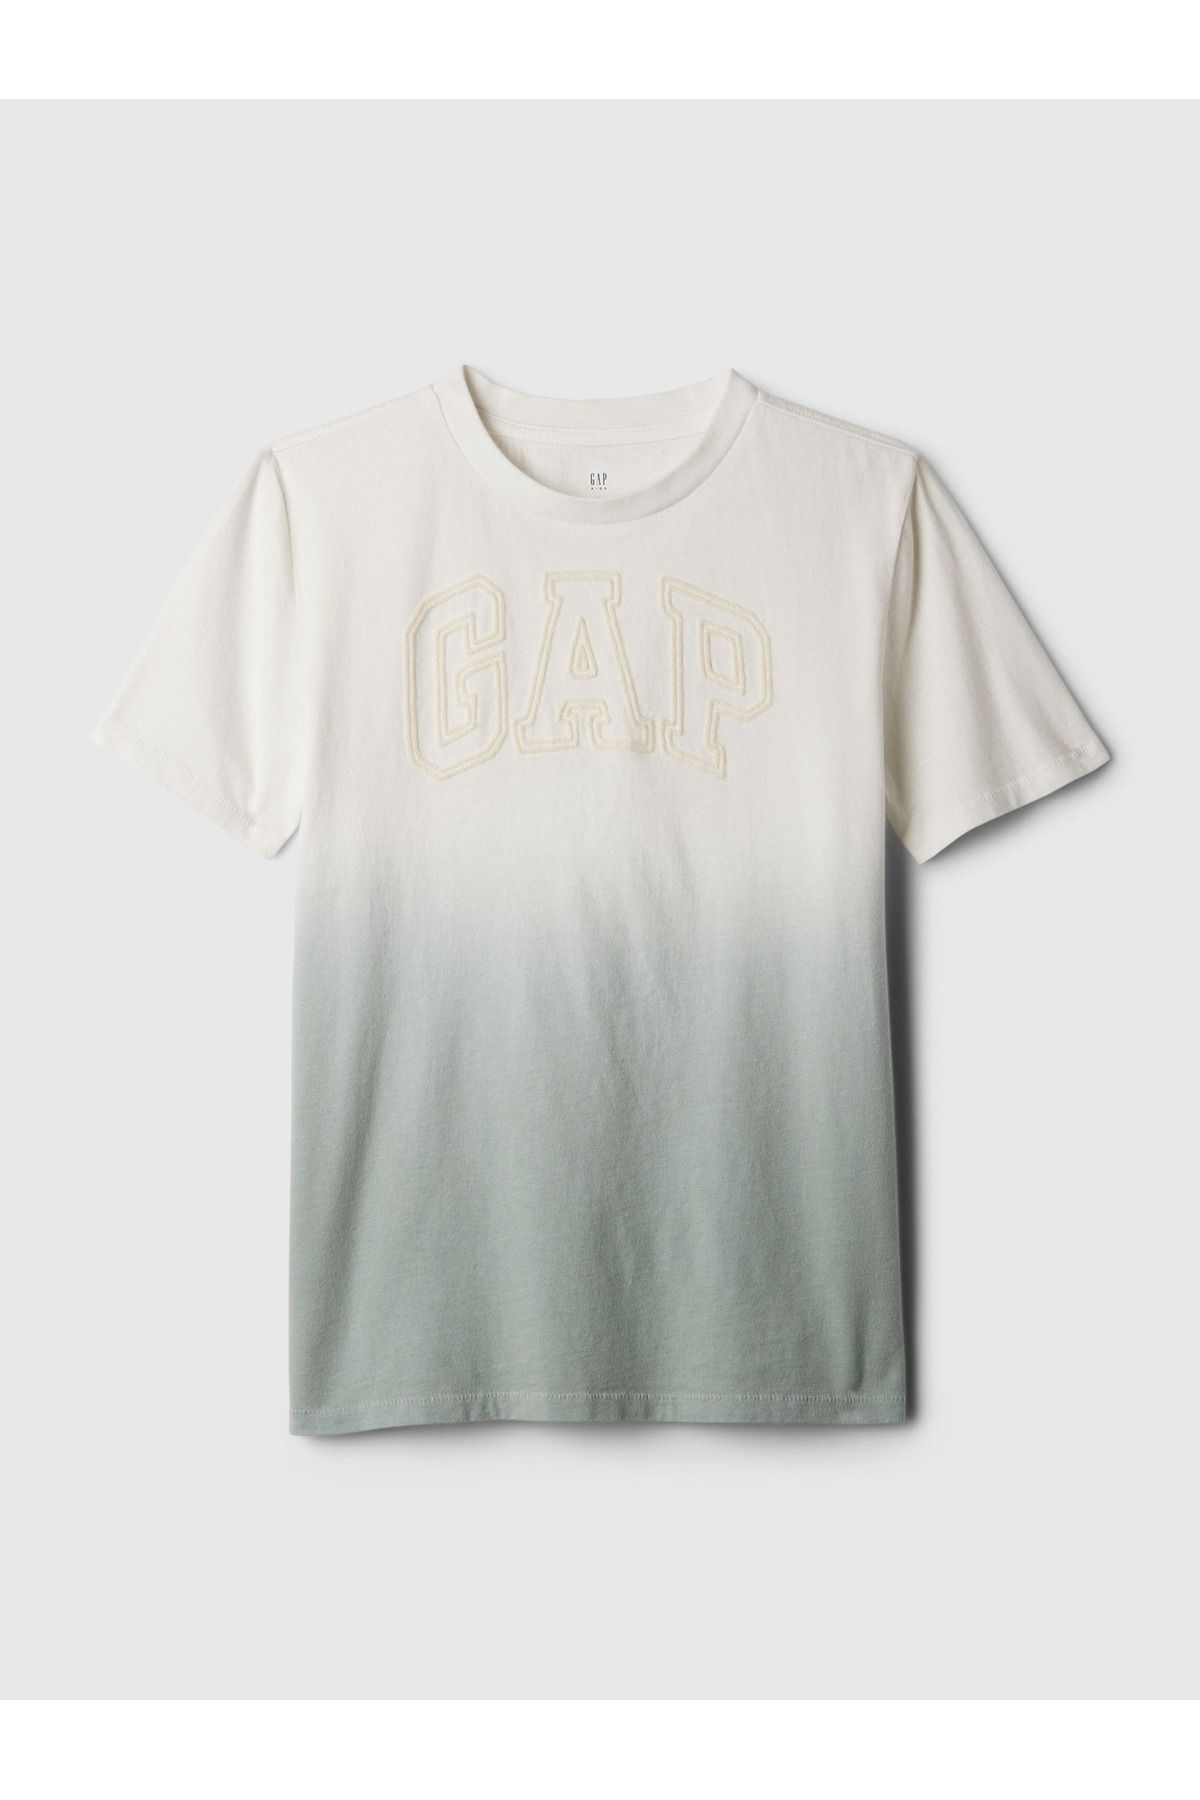 GAP Erkek Çocuk Yeşil Gap Logo T-Shirt